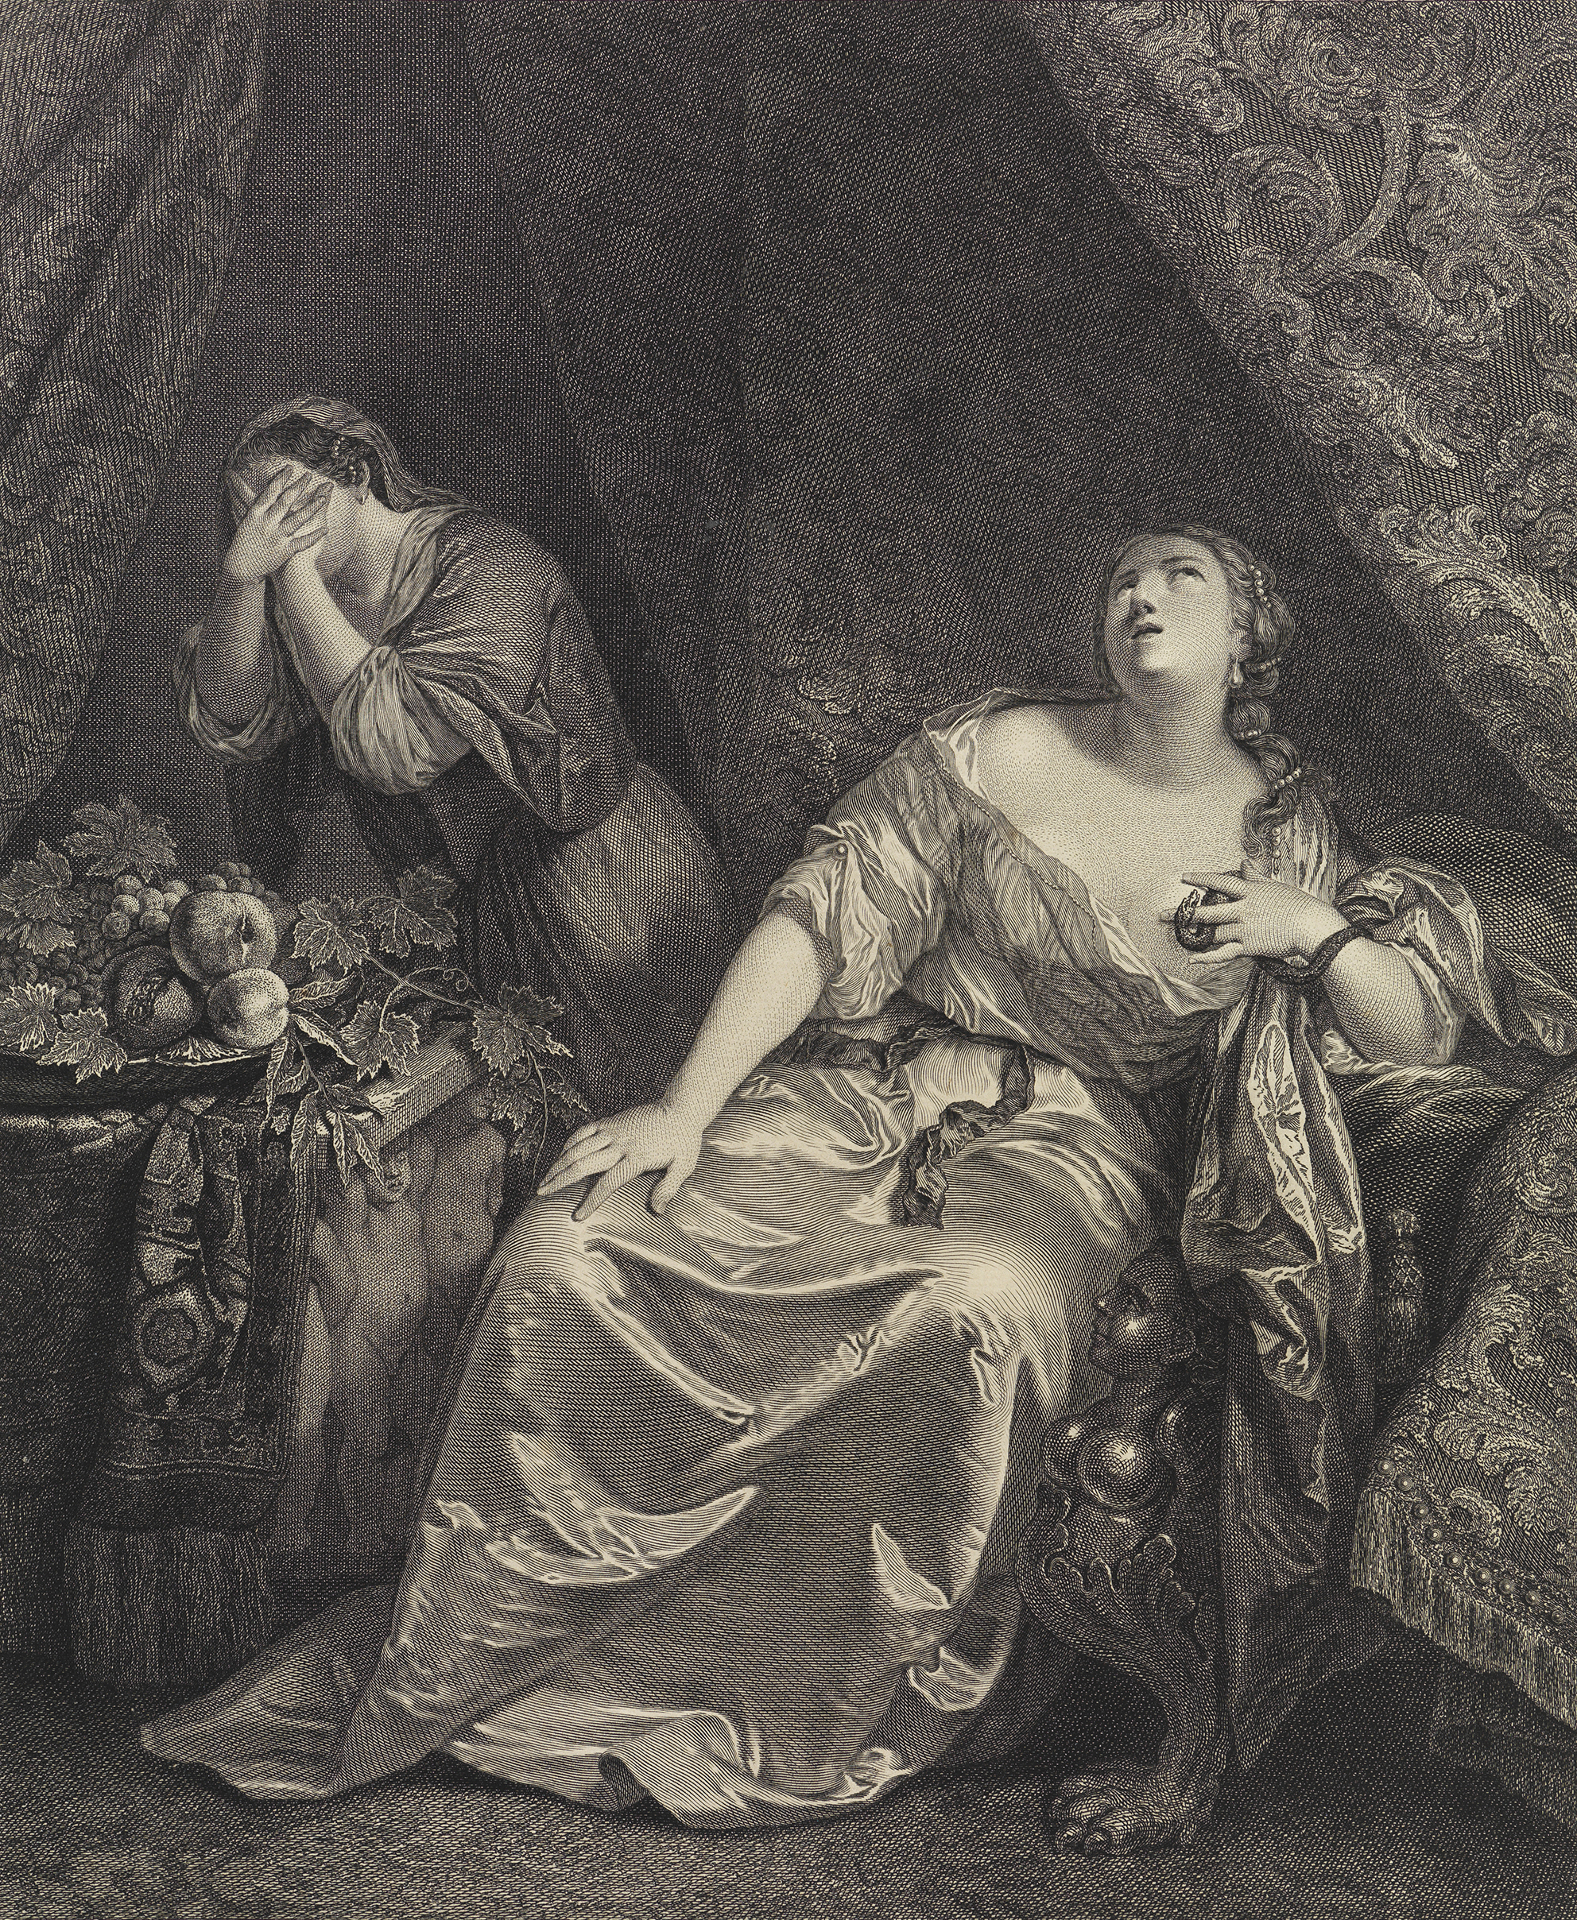 Detail von Johann Georg Willes Zeichnung Tod der Cleopatra. Es zeigt Cleopatra in einem Barockkleid wie sie in die Luft guckt und ihre Hand auf ihr Dekolleté hält. Hinter ihr steht eine Frau und hält sich die Hände vor ihr Gesicht.